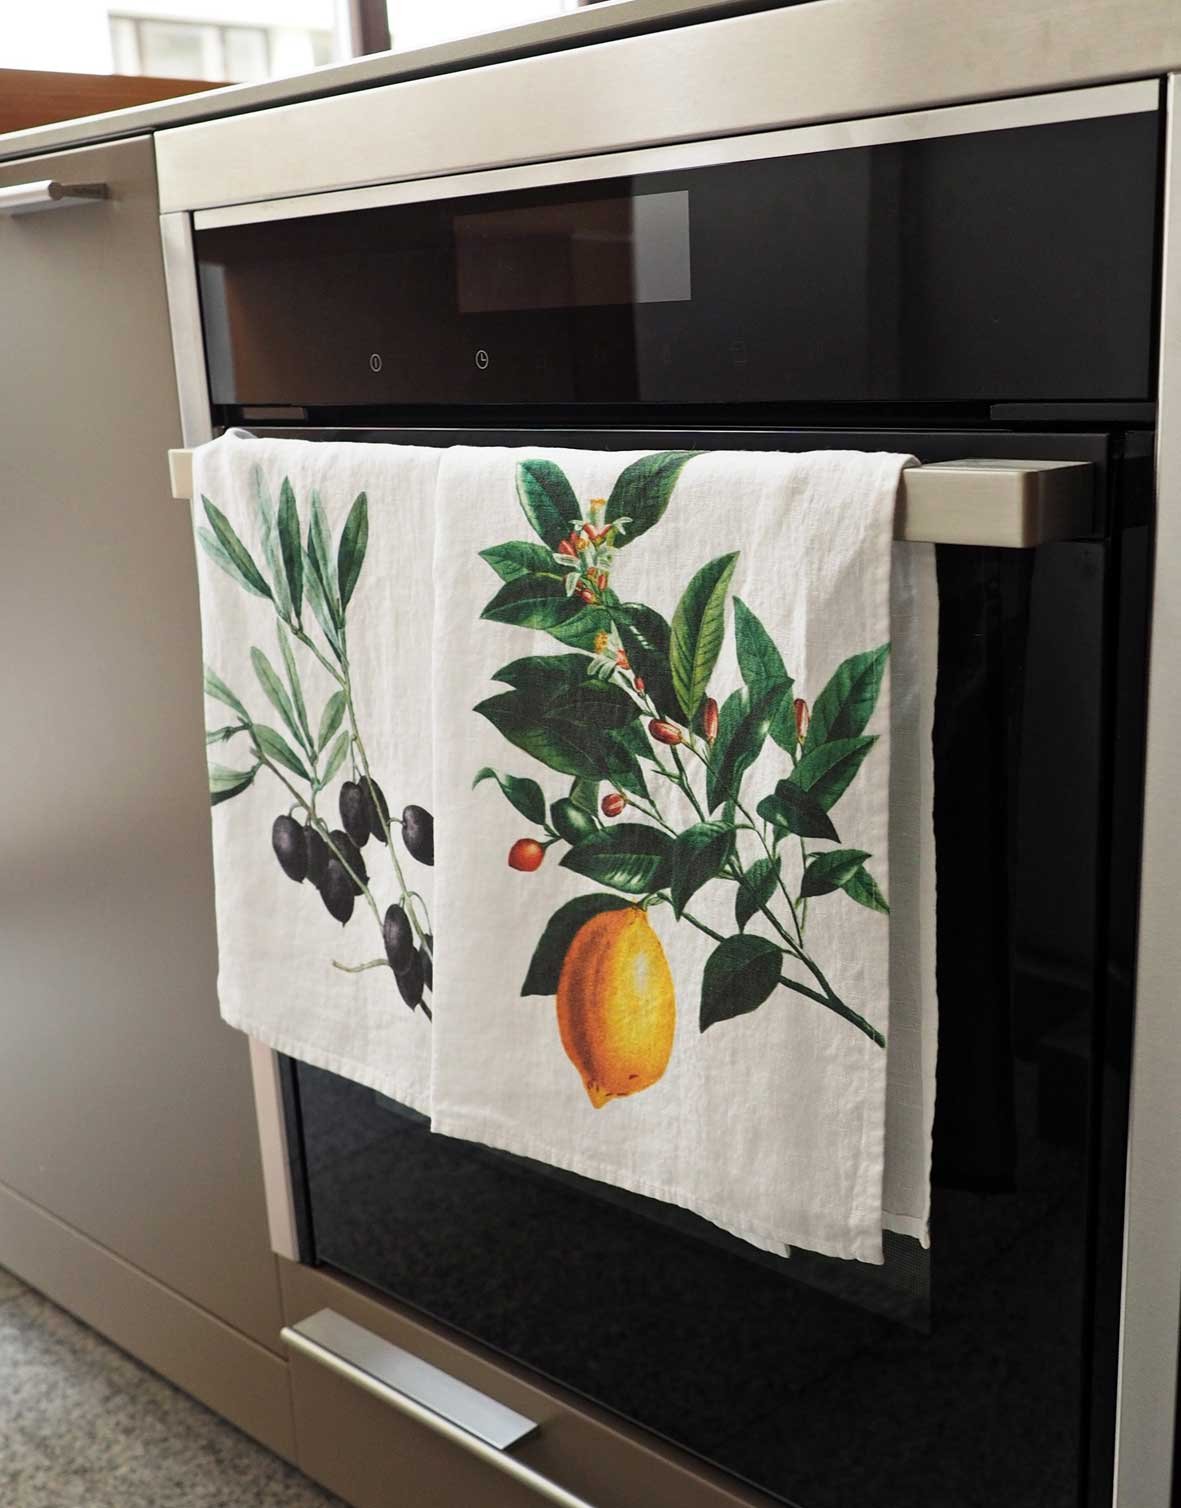 https://linoroom.com/wp-content/uploads/2019/09/lemon-and-olive-kitchen-towels.jpg